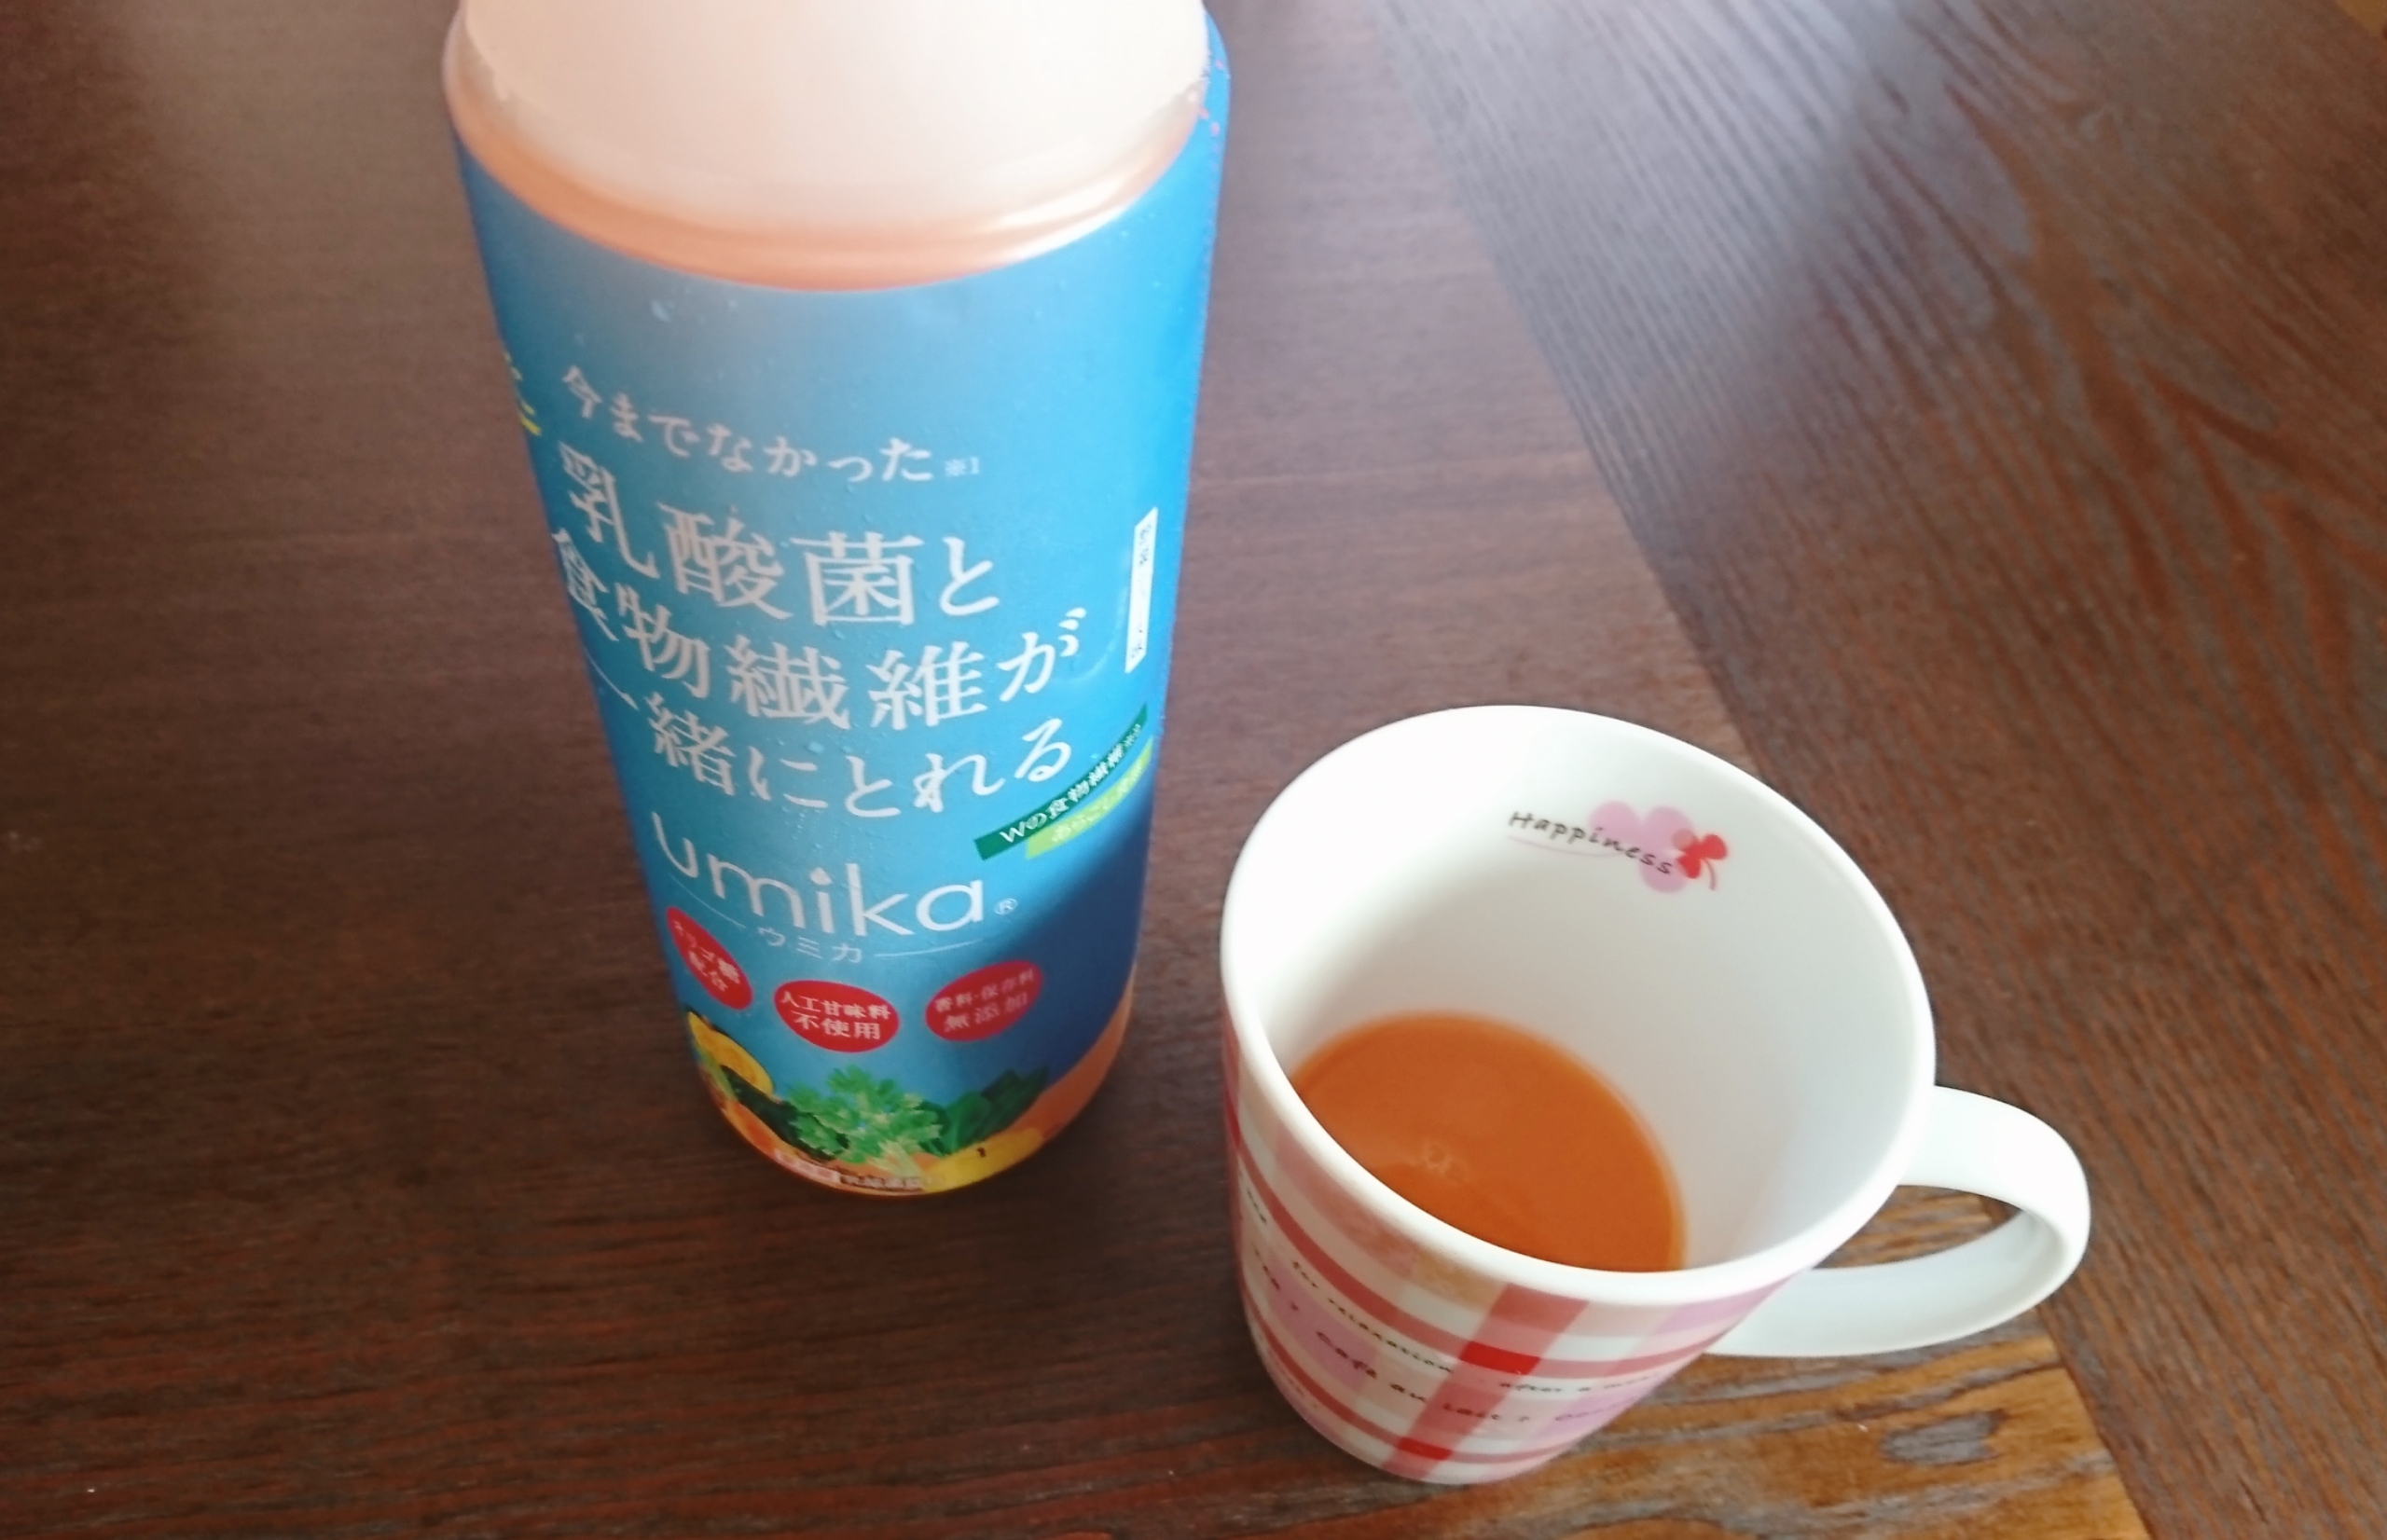 カネリョウ海藻株式会社 乳酸菌飲料ウミカ -umika-を使ったYuKaRi♡さんのクチコミ画像6